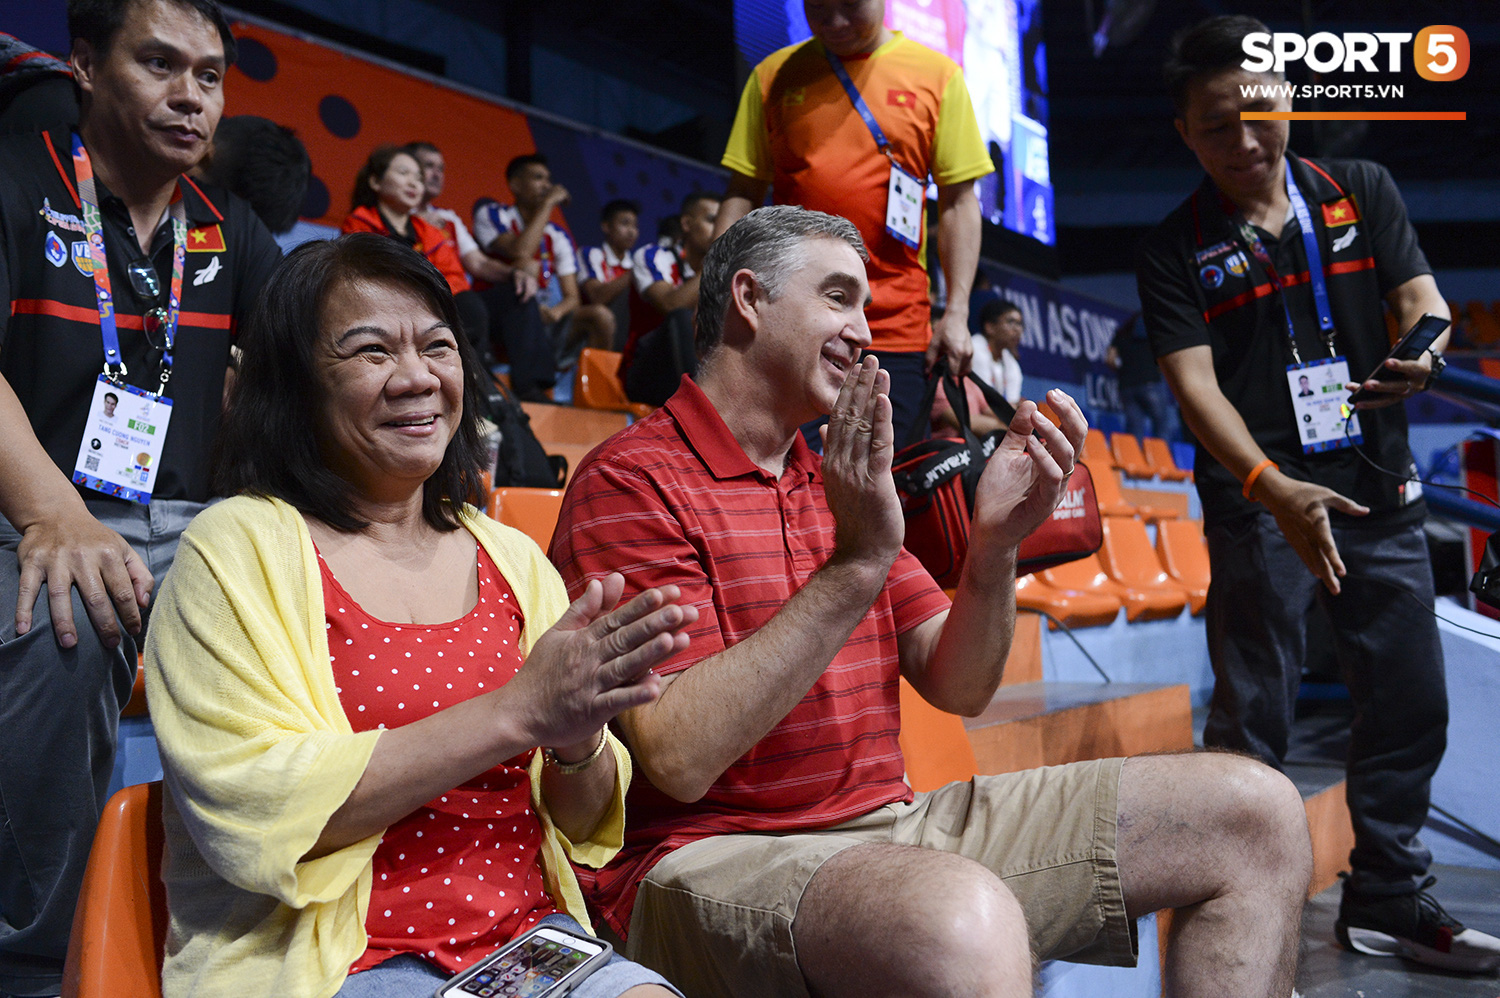 Bố mẹ bay 16 tiếng từ Mỹ sang Philippines cổ vũ, Chris Dierker chơi như lên đồng giúp tuyển bóng rổ Việt Nam thắng 3 trận ở ngày đầu SEA Games - Ảnh 2.